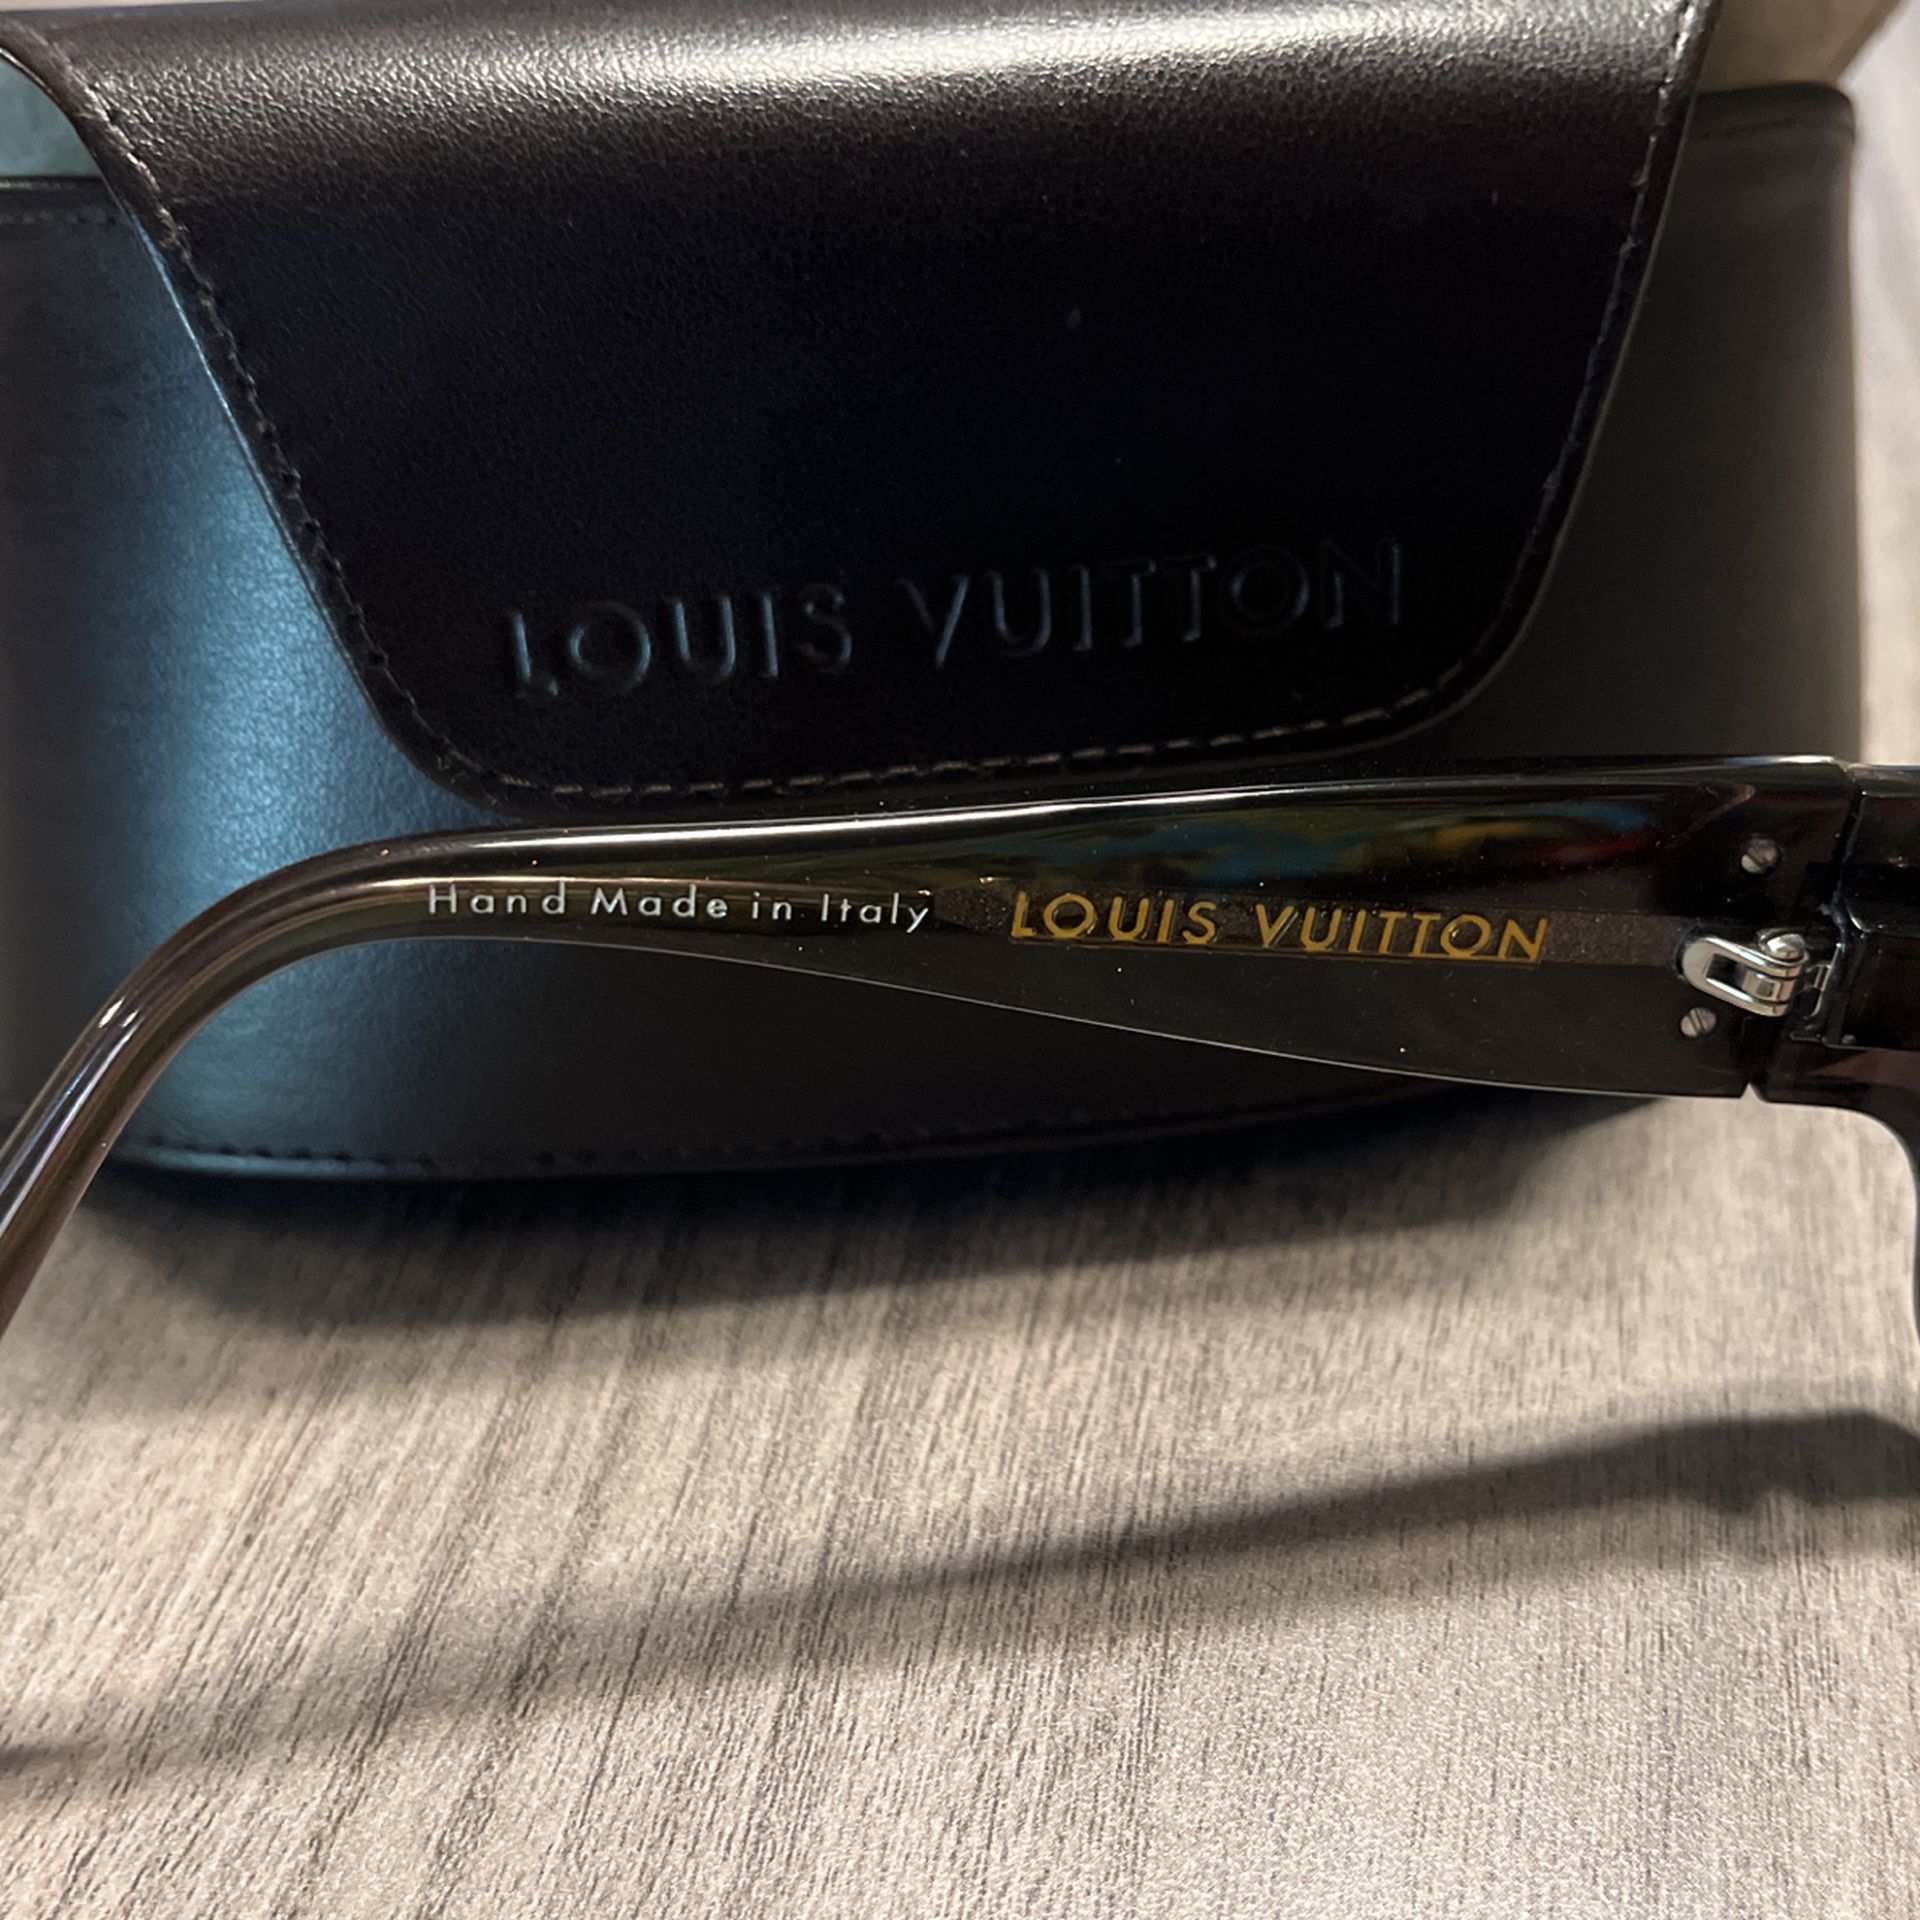 Louis Vuitton Sunglasses Ursula Truss Glitter Z0134E for Sale in Corona, CA  - OfferUp